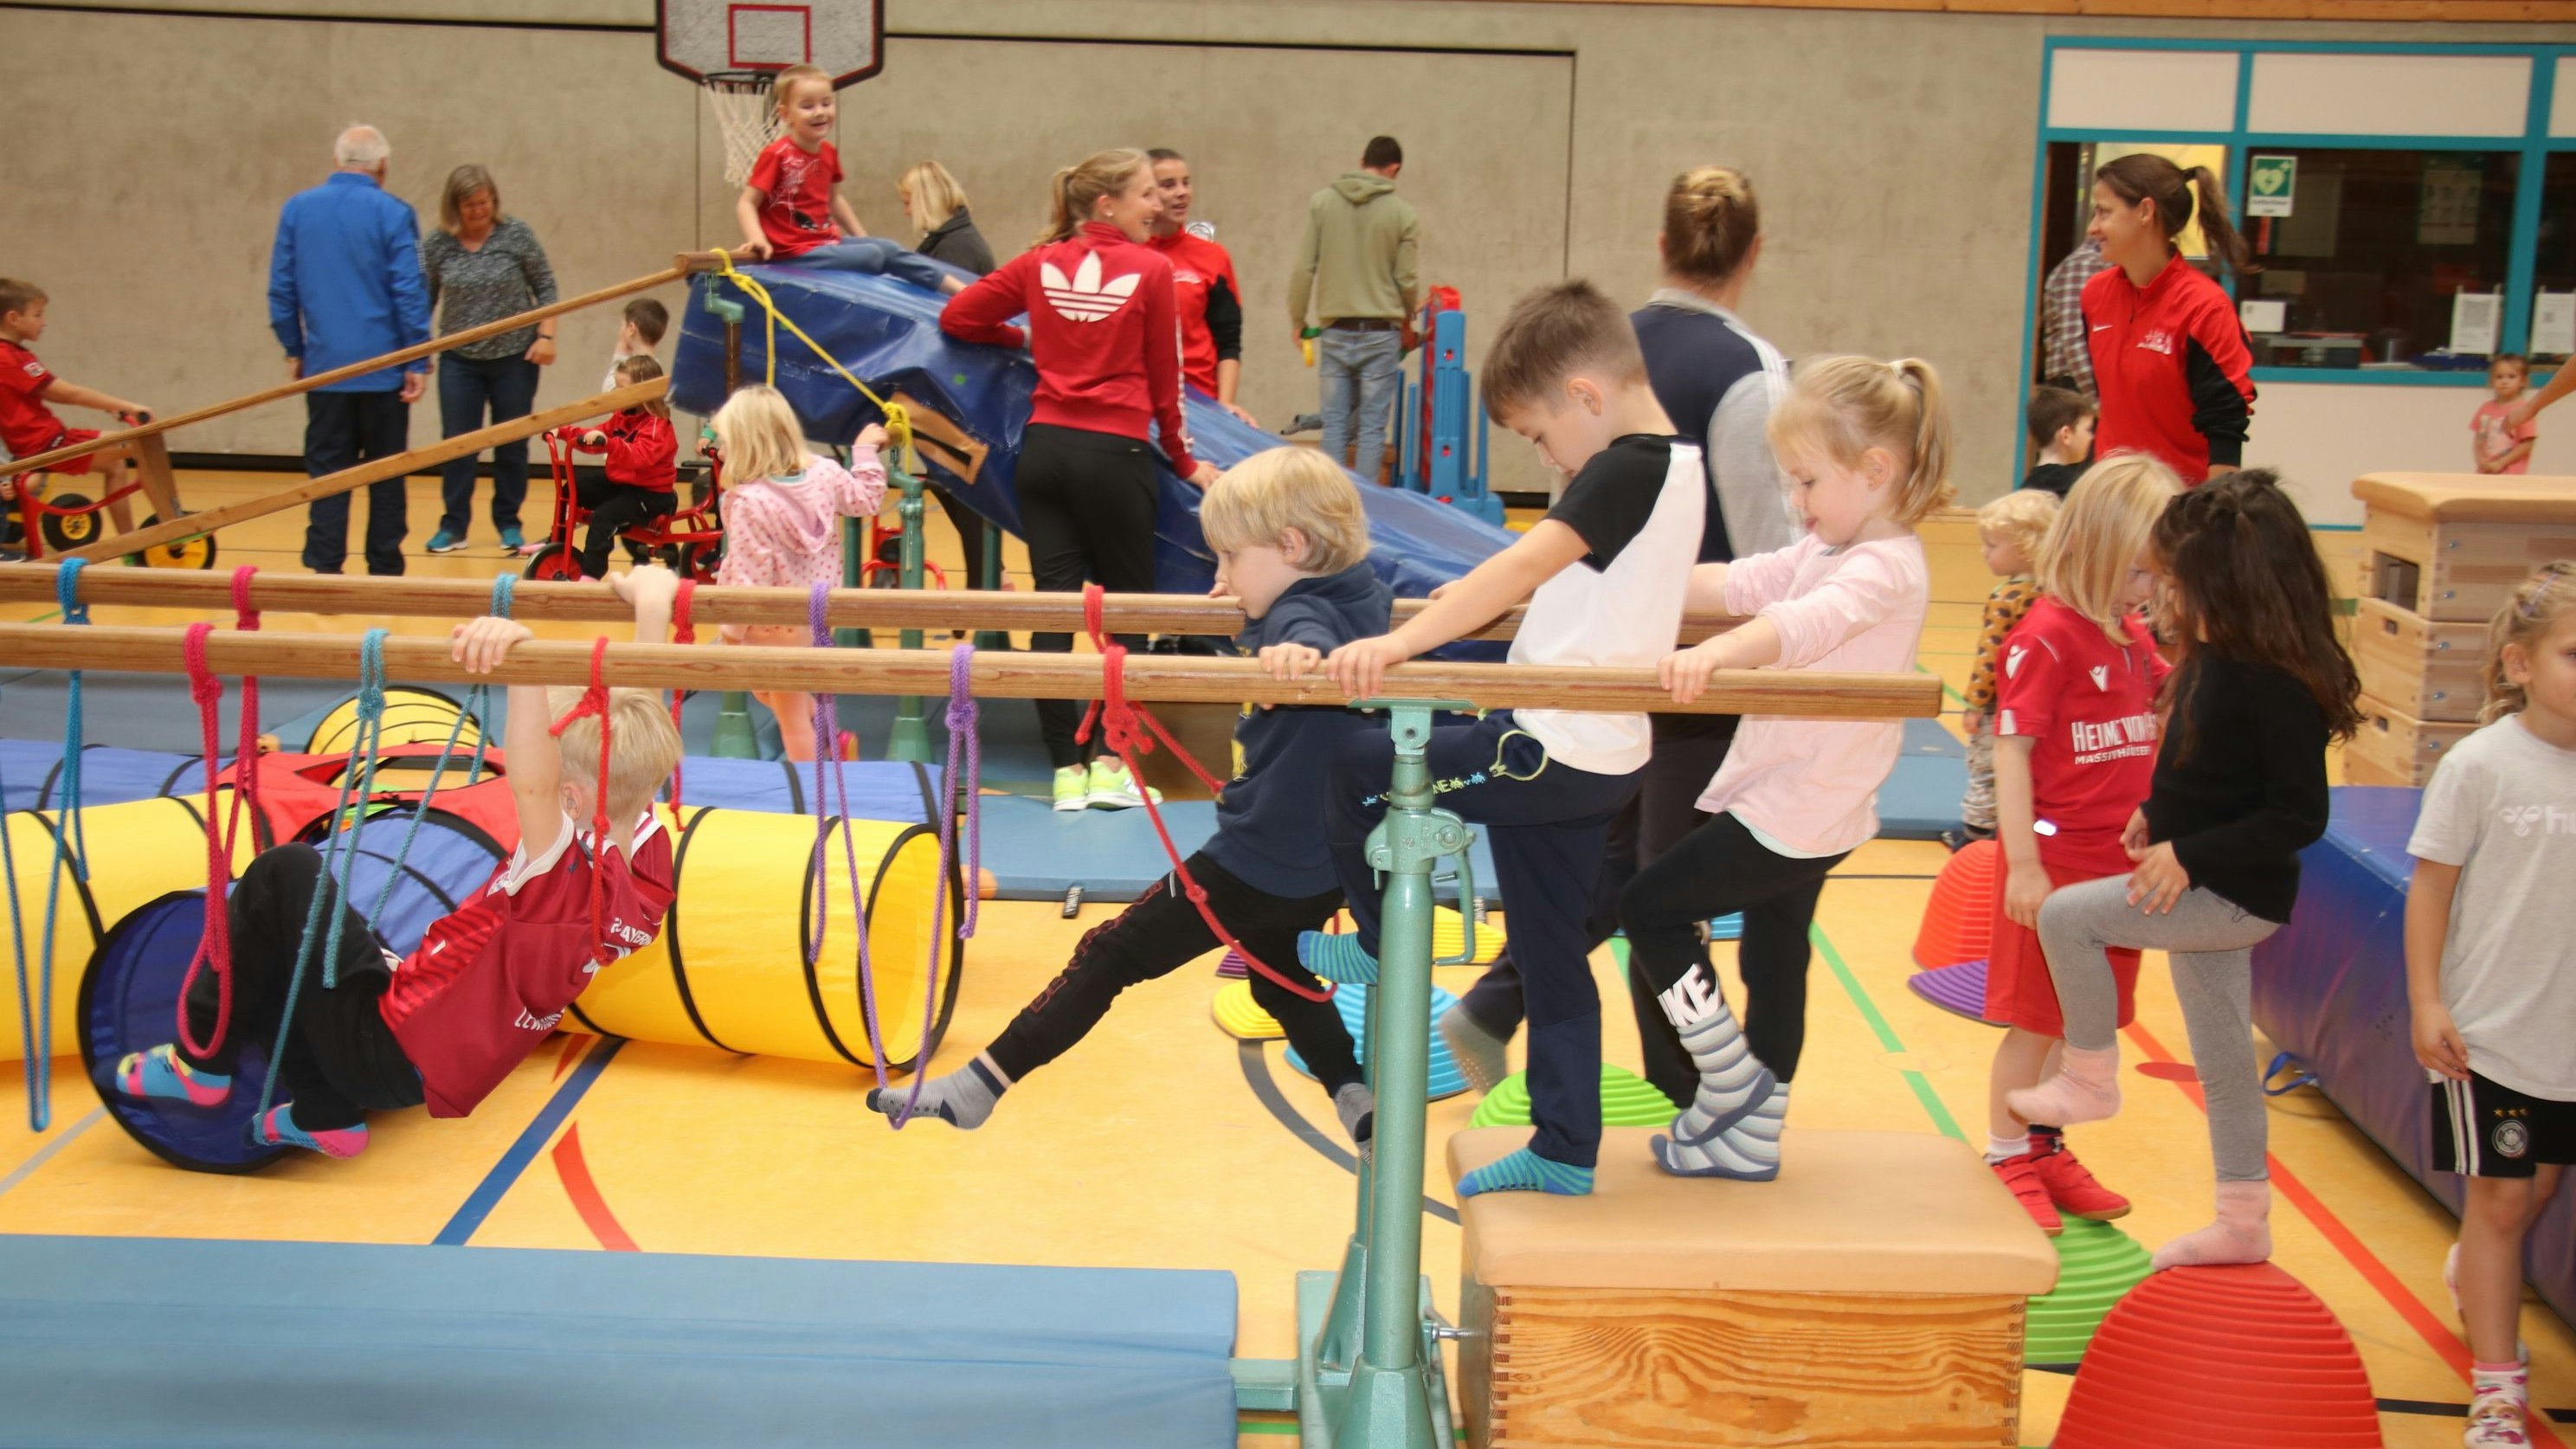 Turnen, toben, Spaß haben: Mehr als 100 Kinder fanden sich am Dienstagvormittag zu den "Bewegten Tagen" in der großen Neuenkirchener Sporthalle ein. Foto: Lammert